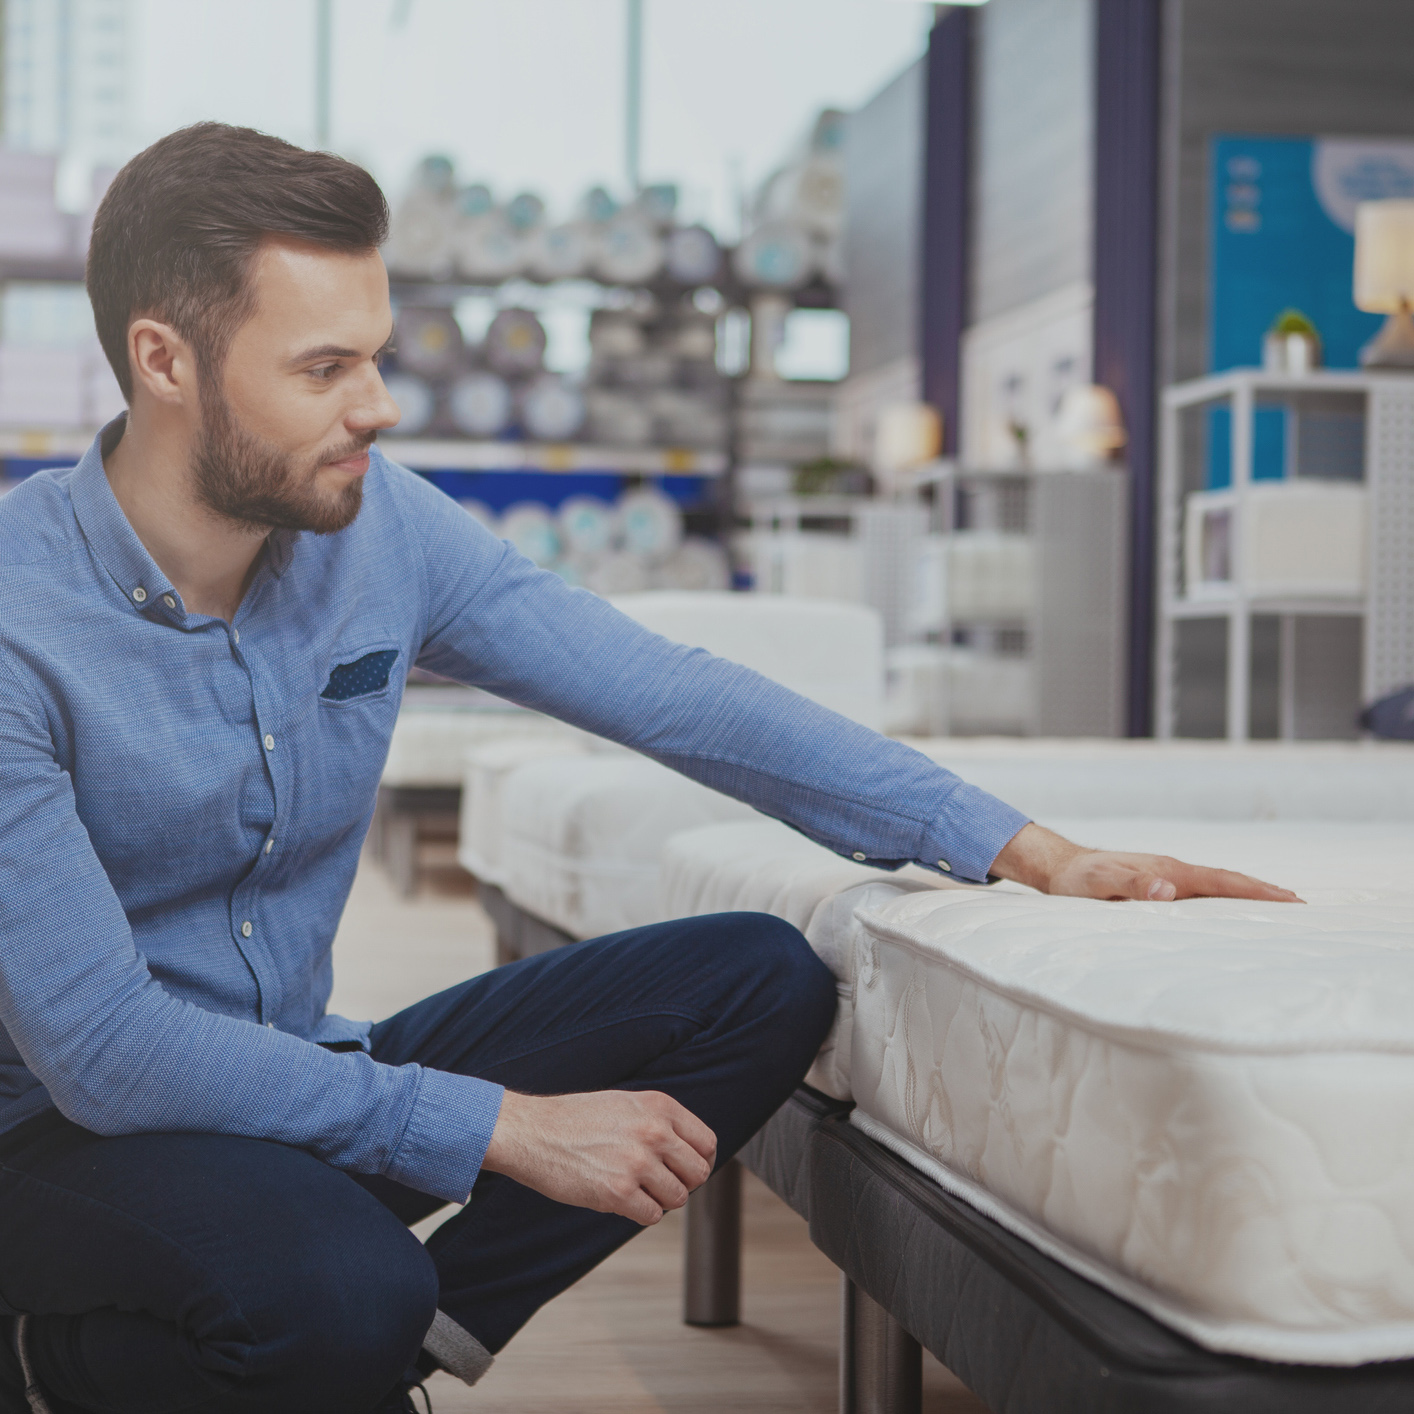 A man in a blue shirt goes mattress shopping